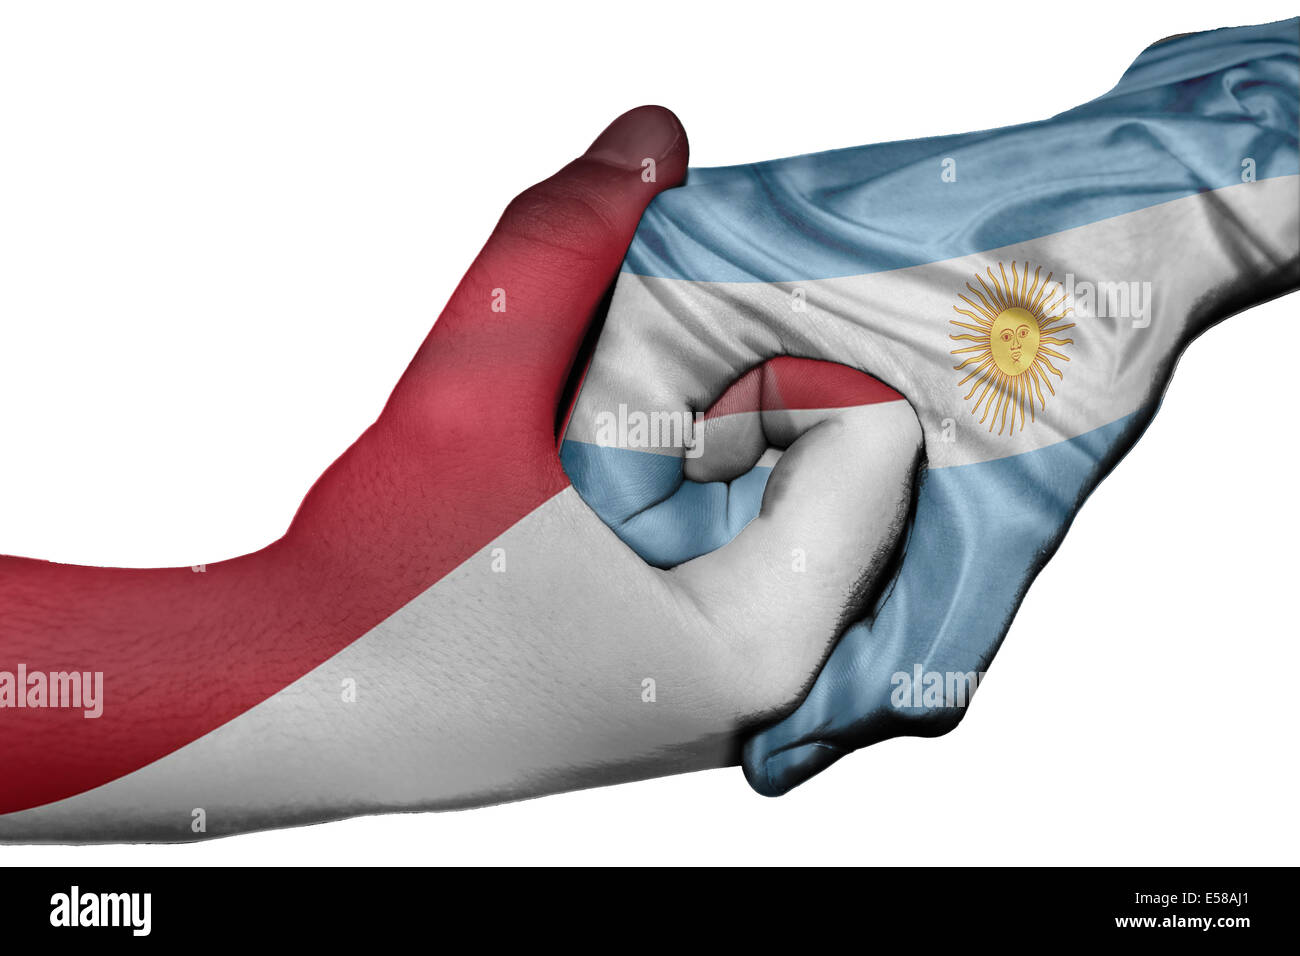 Handshake diplomatiche tra paesi: bandiere di Indonesia e Argentina sovradipinta le due mani Foto Stock